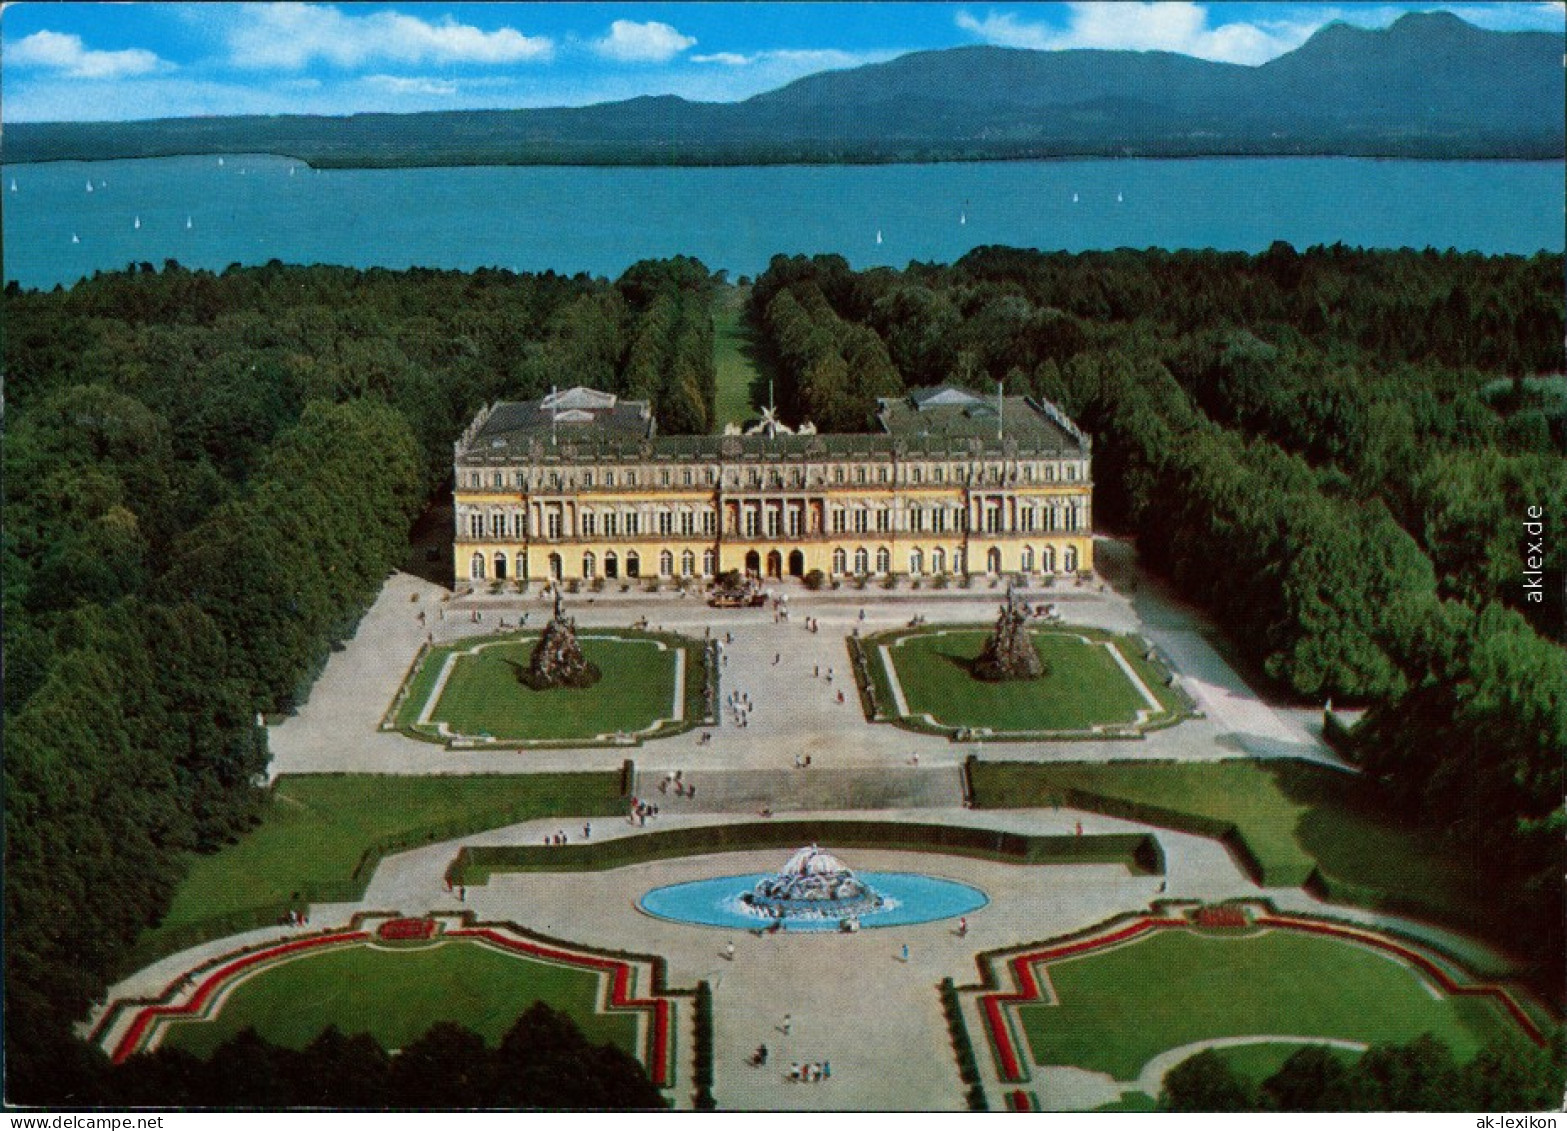 Ansichtskarte Chiemsee Herrenchiemsee / Herreninsel Mit Schloss 1994 - Chiemgauer Alpen